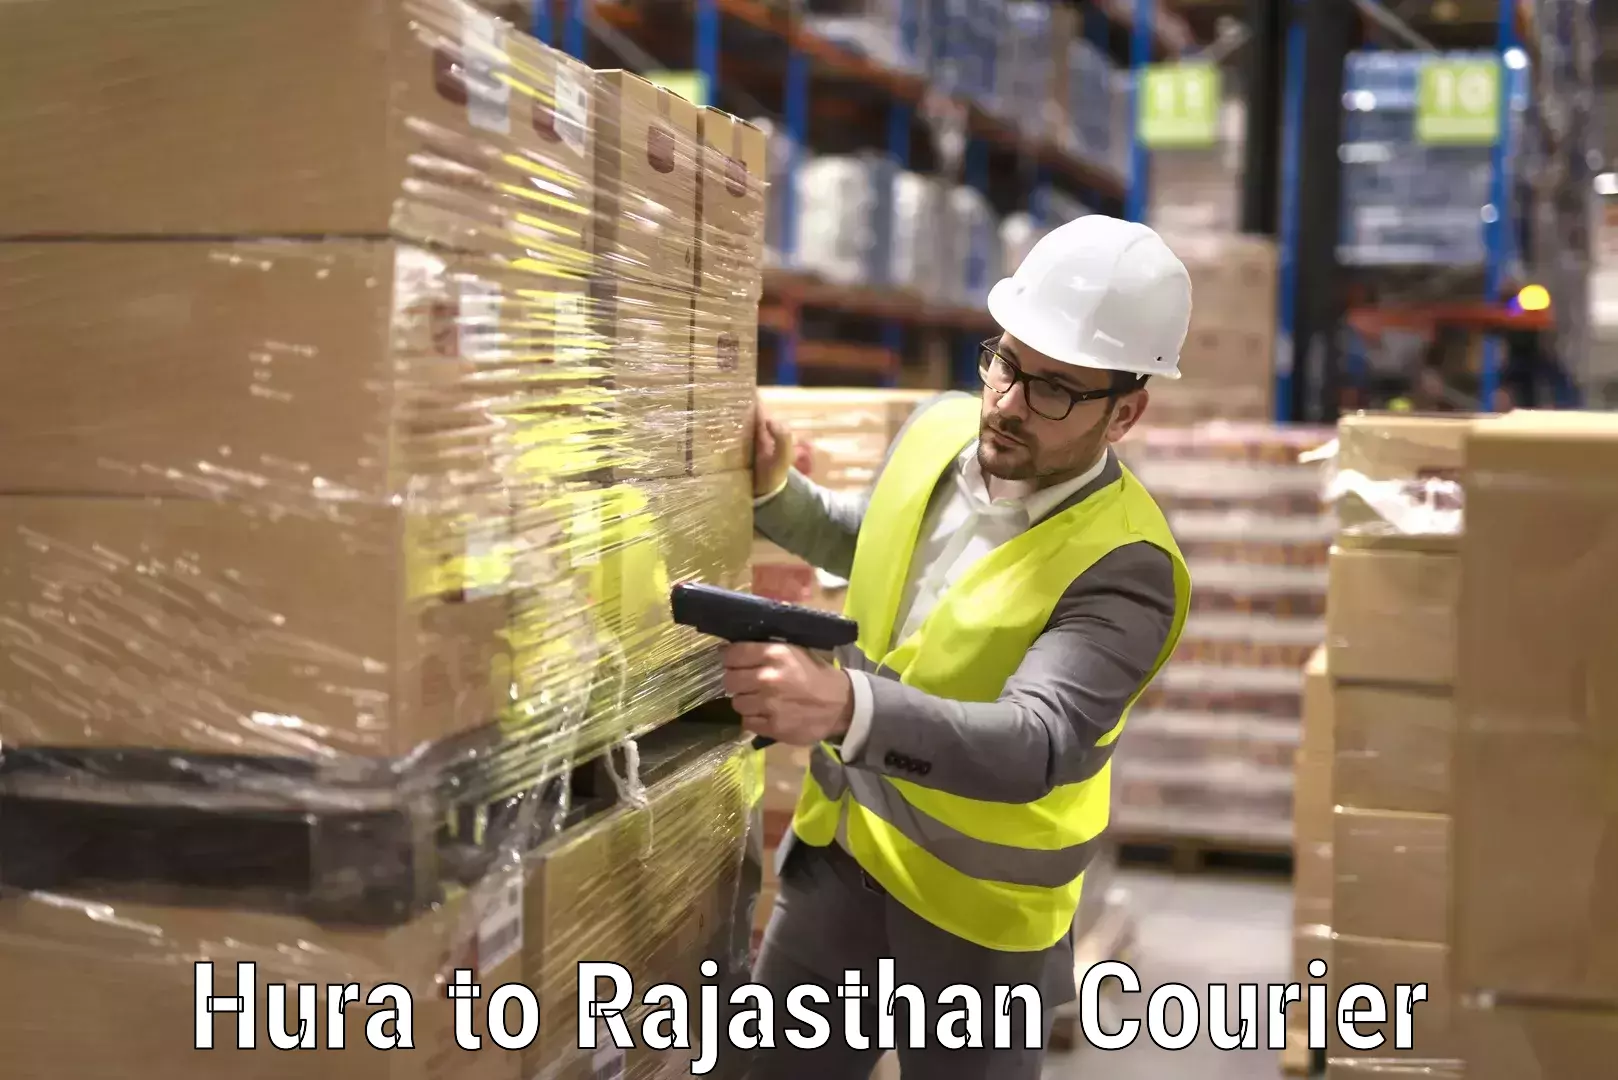 Furniture moving experts Hura to Rajasthan